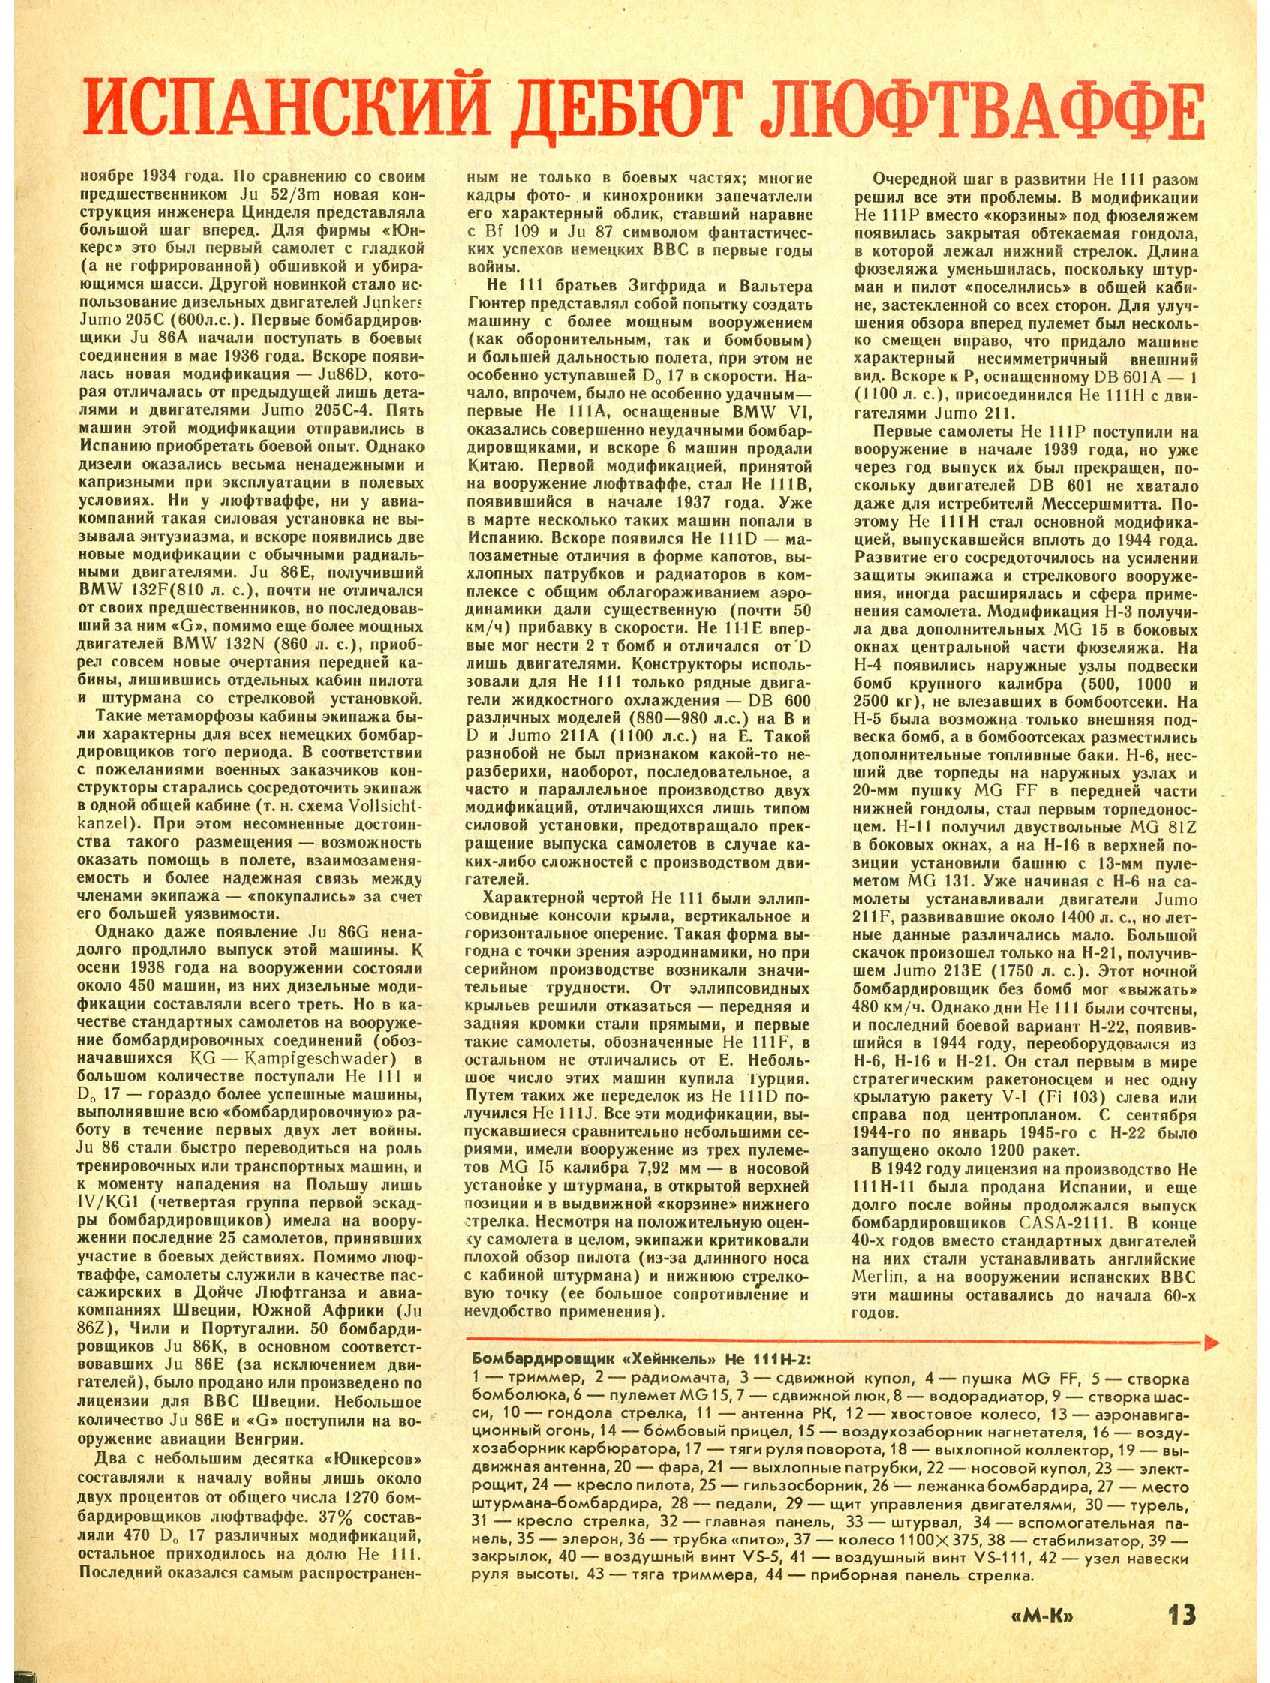 МК 9, 1992, 13 c.